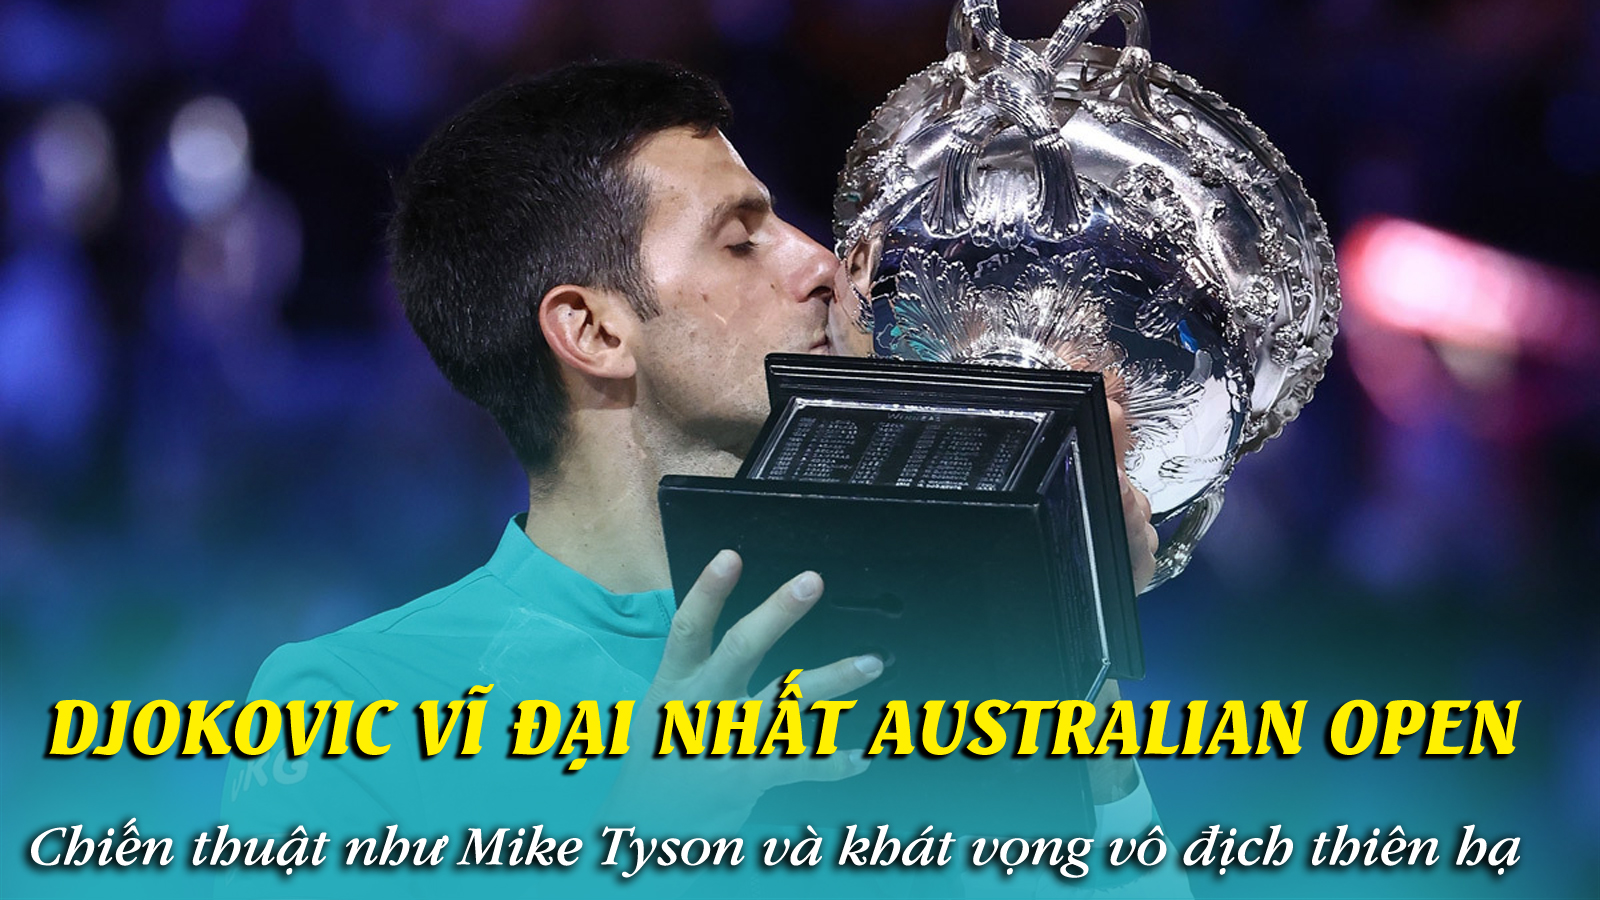 Djokovic vĩ đại nhất Australian Open: Chiến thuật như Mike Tyson và khát vọng vô địch thiên hạ - 1